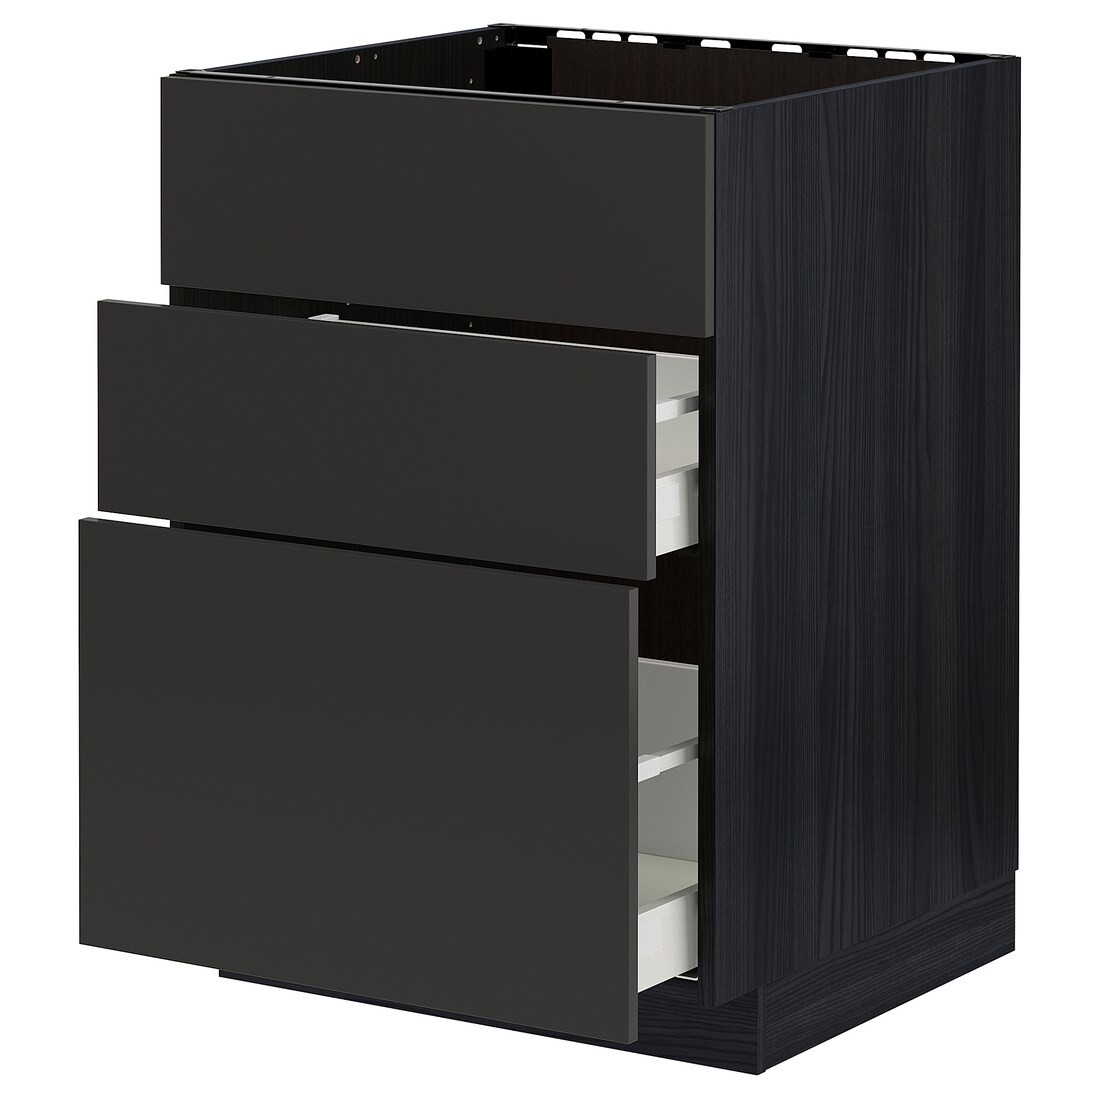 IKEA METOD МЕТОД / MAXIMERA МАКСИМЕРА Напольный шкаф под мойку с ящиками, черный / Nickebo матовый антрацит, 60x60 см 29499032 294.990.32